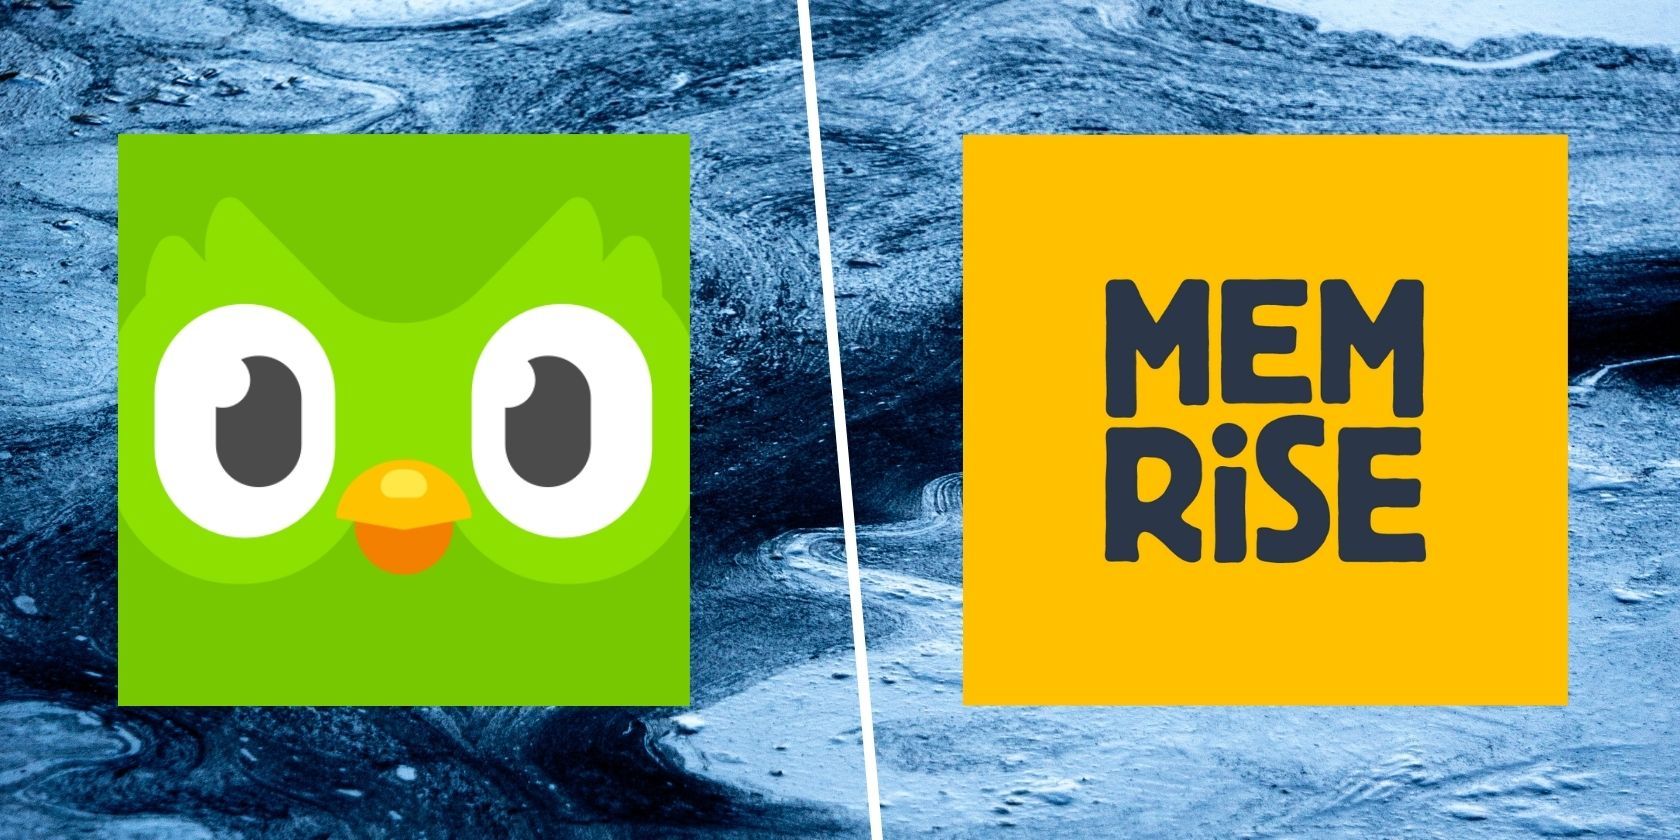 duolingo app logo next to the memrise app logo